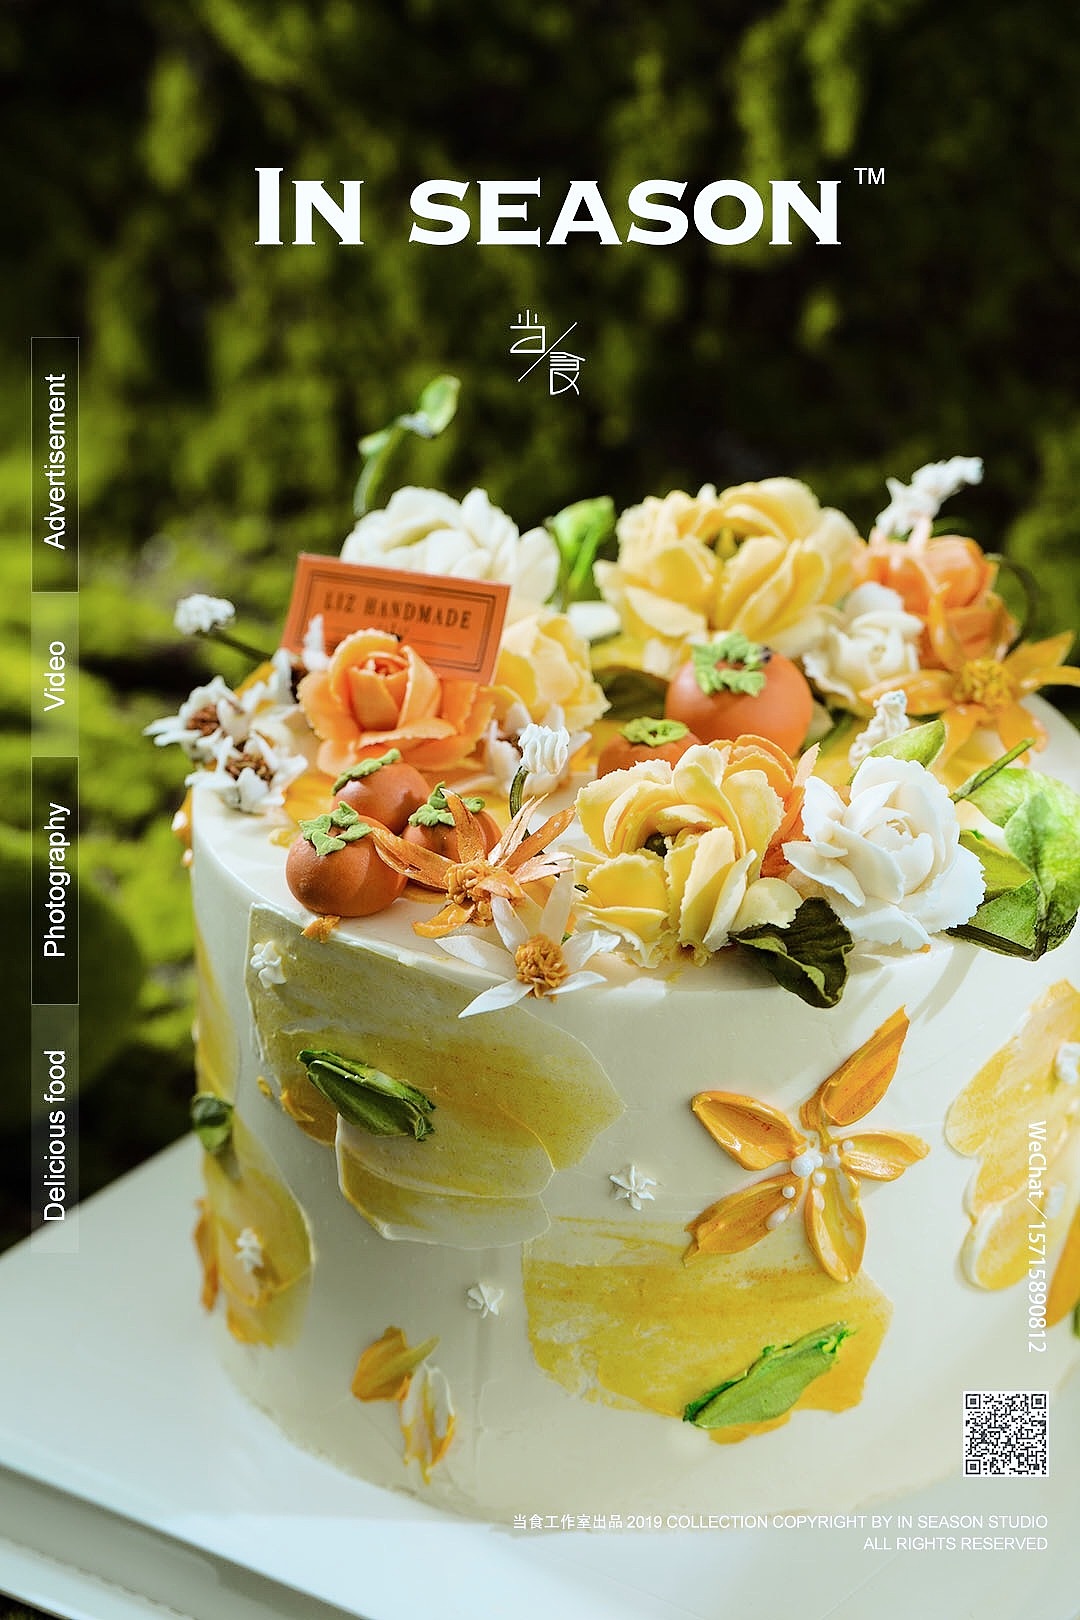 蛋糕奶油裱花的做法_【图解】蛋糕奶油裱花怎么做如何做好吃_蛋糕奶油裱花家常做法大全_莱婉娜_豆果美食